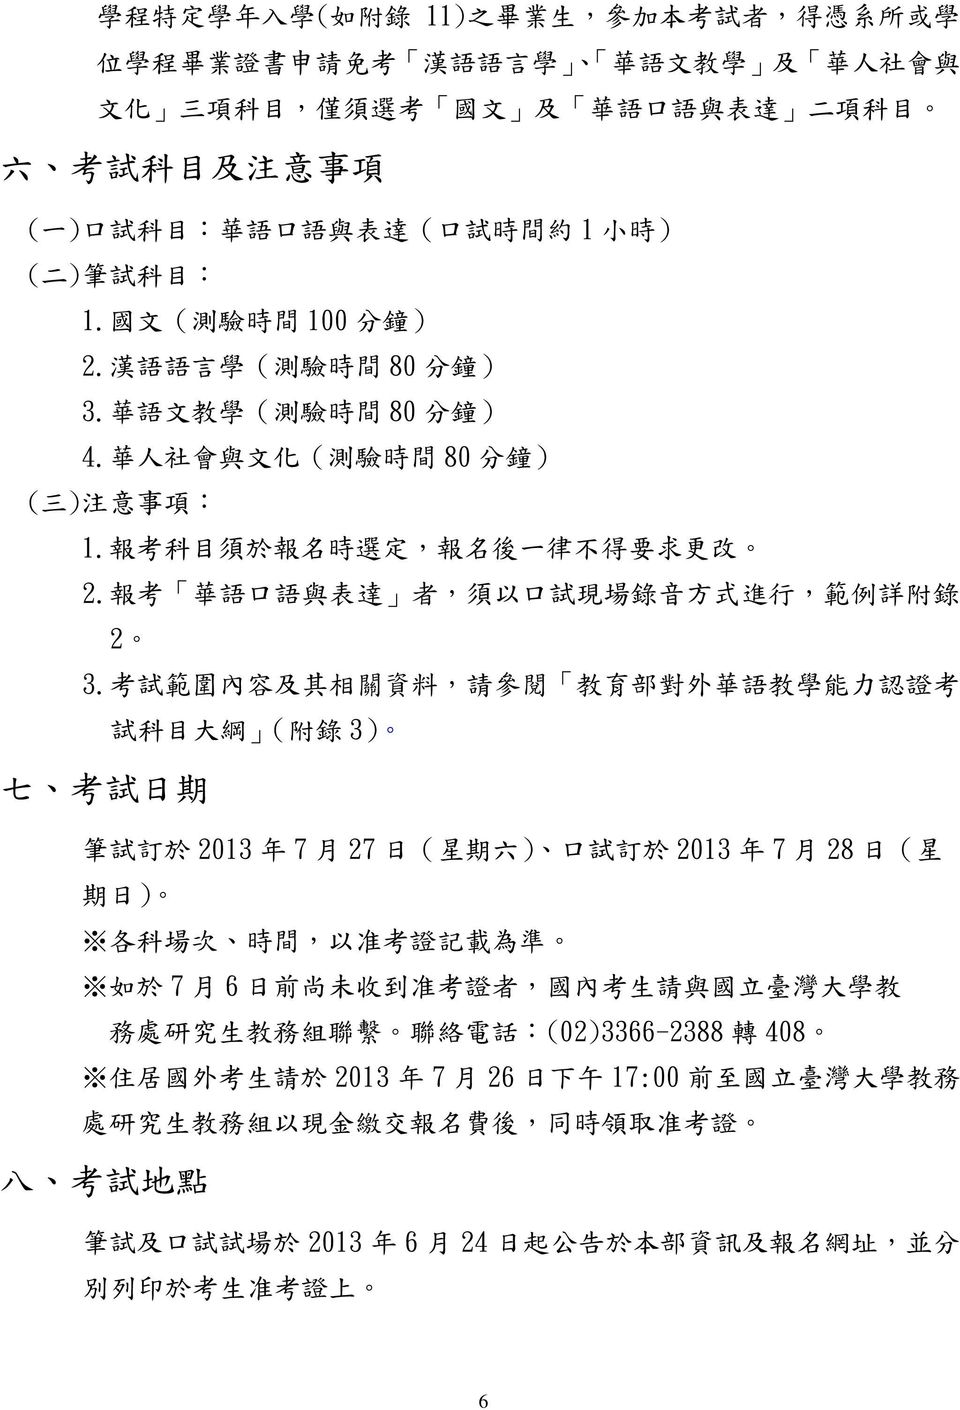 報 考 科 目 須 於 報 名 時 選 定, 報 名 後 一 律 不 得 要 求 更 改 2. 報 考 華 語 口 語 與 表 達 者, 須 以 口 試 現 場 錄 音 方 式 進 行, 範 例 詳 附 錄 2 3.